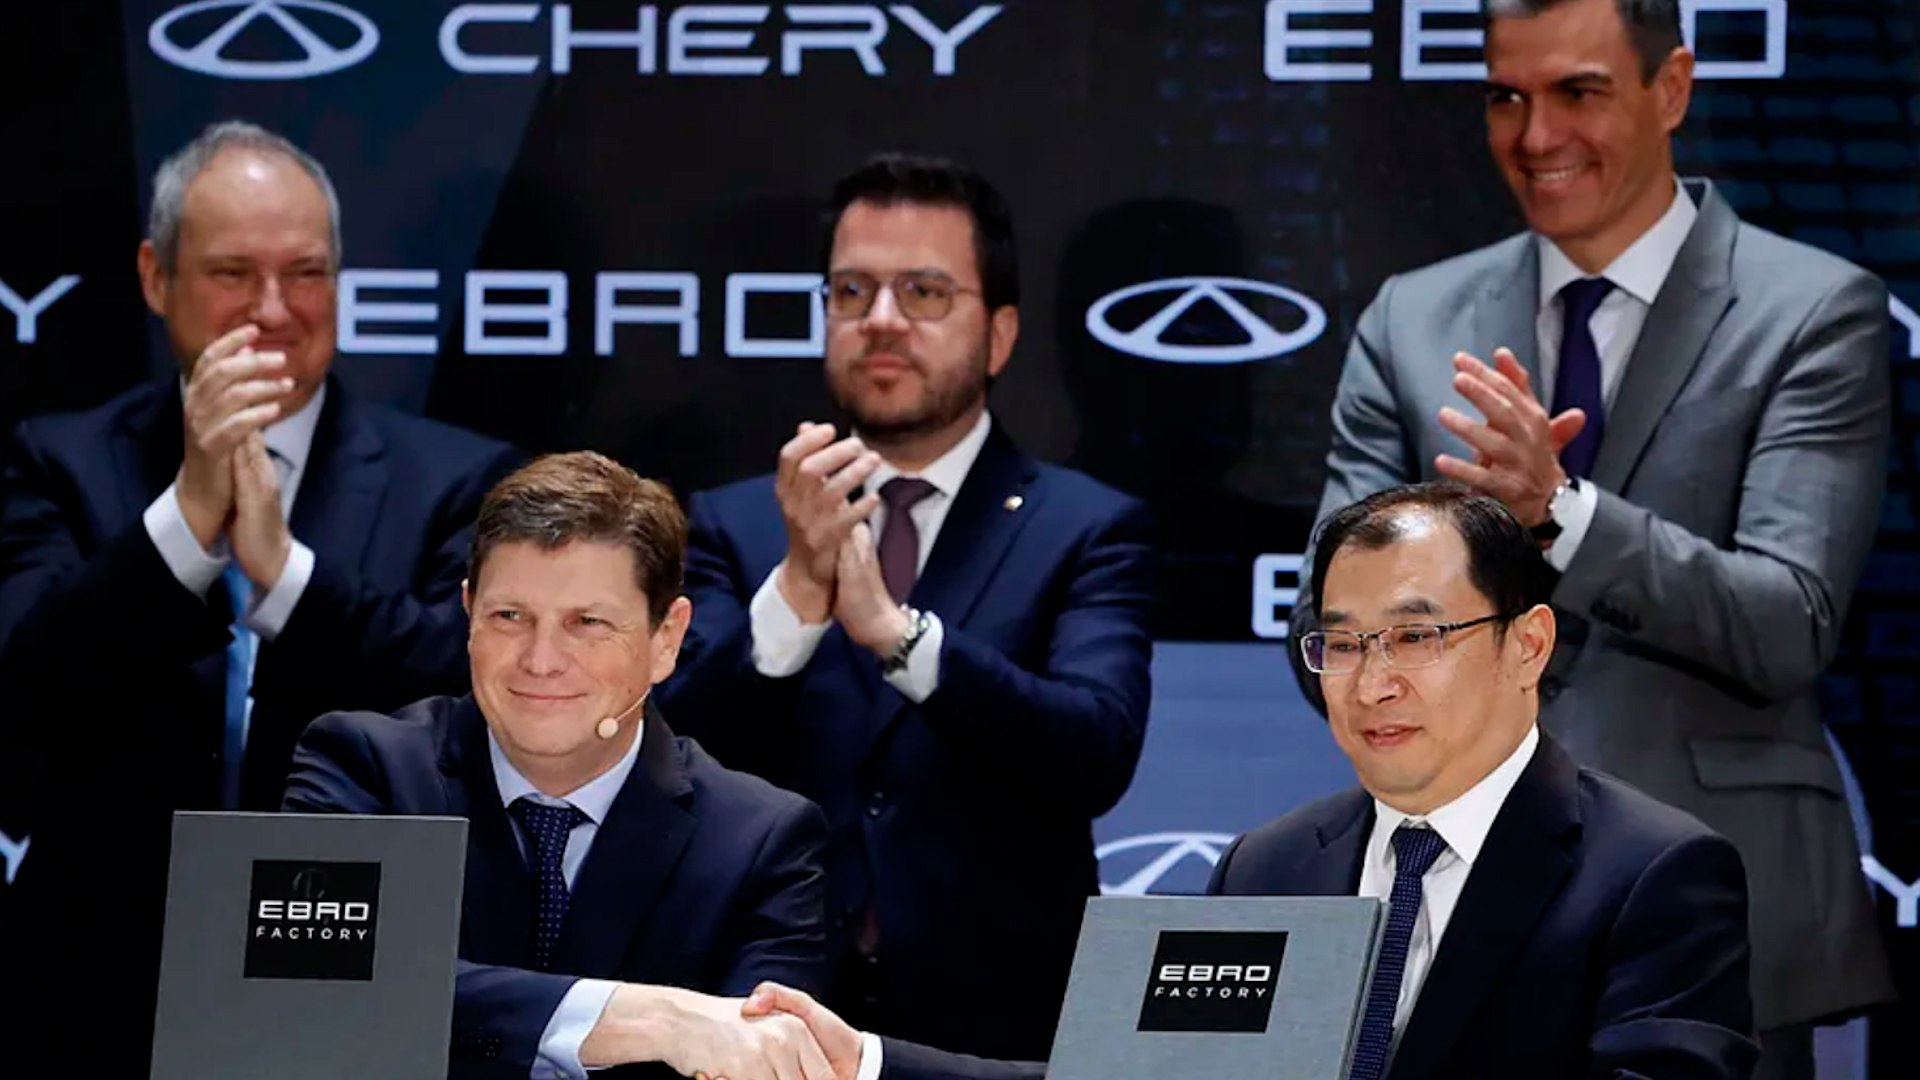 La china Chery y Ebro producir�n 150.000 autom�viles en Barcelona en 2029 y crear�n hasta 1.250 empleos